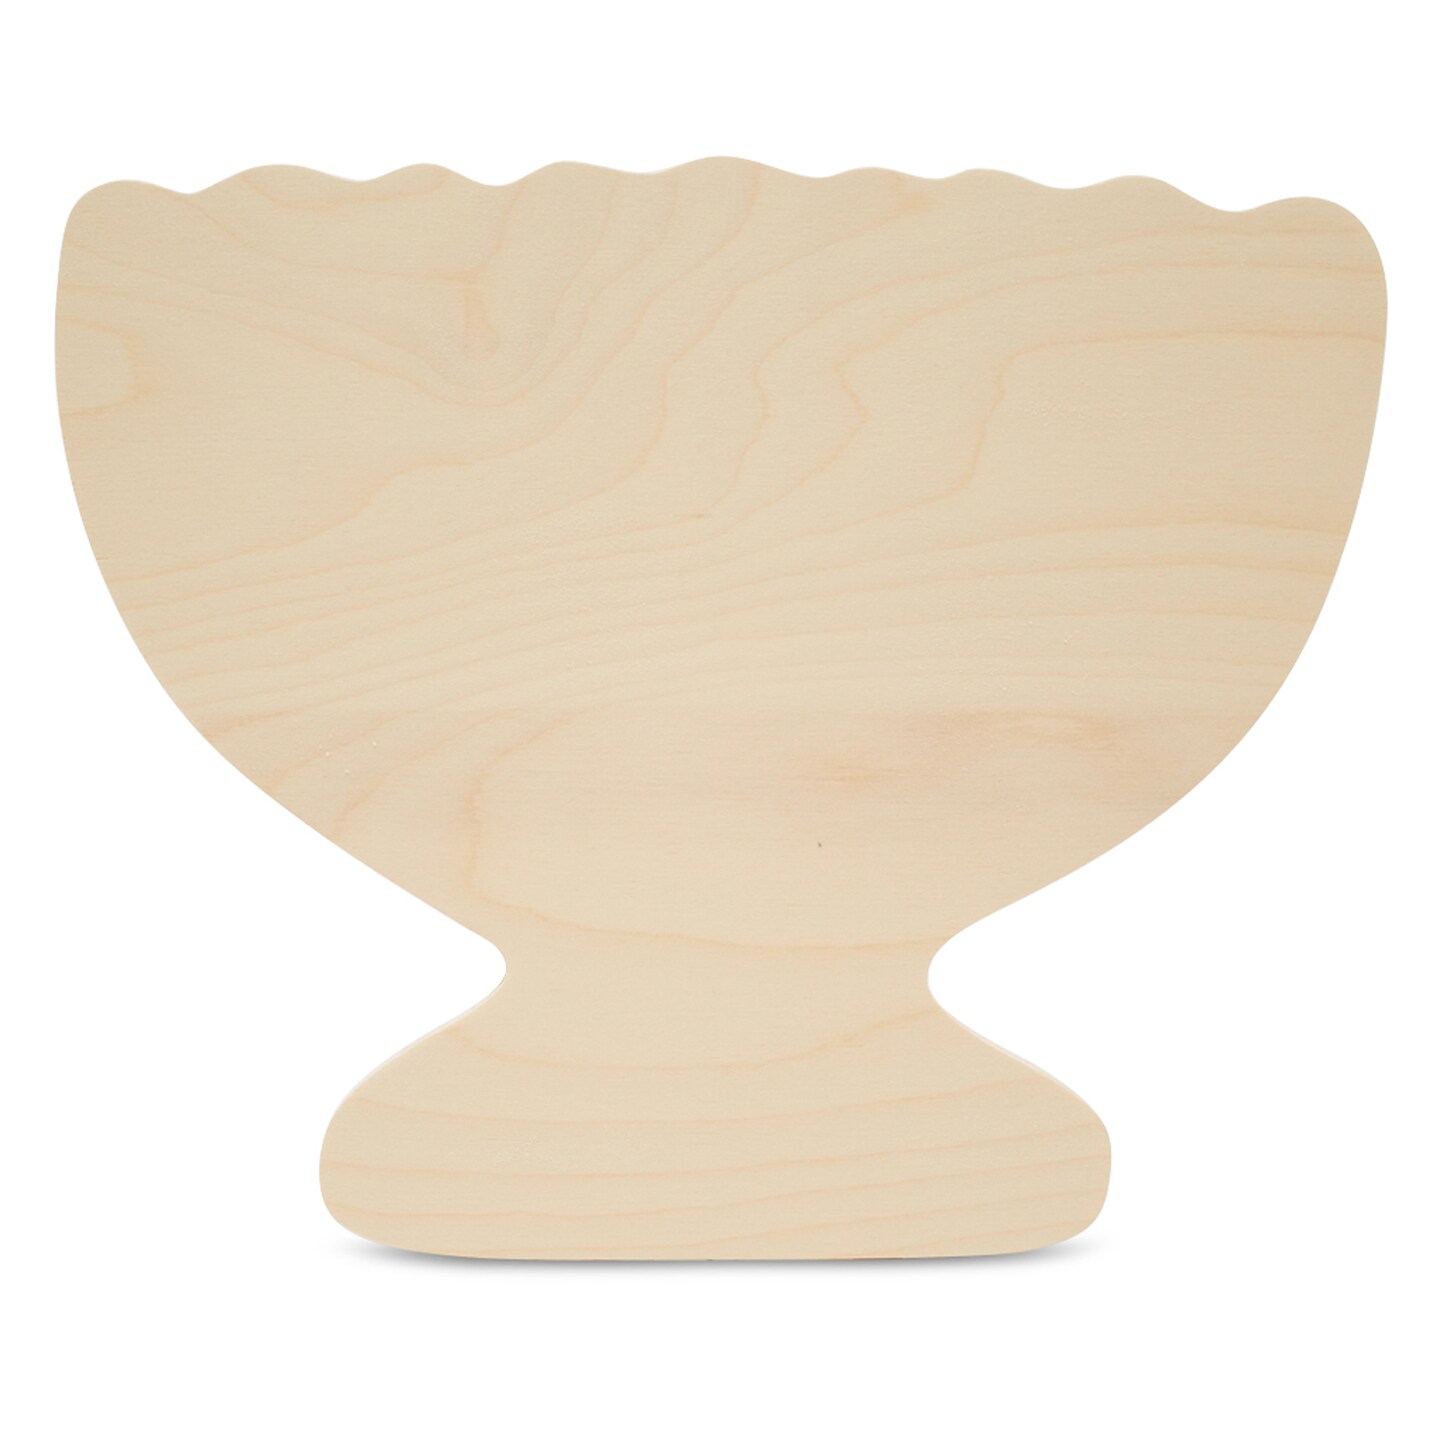 Wooden Menorah Cutout, Classic Shape, for Hanukkah Decor | Woodpeckers